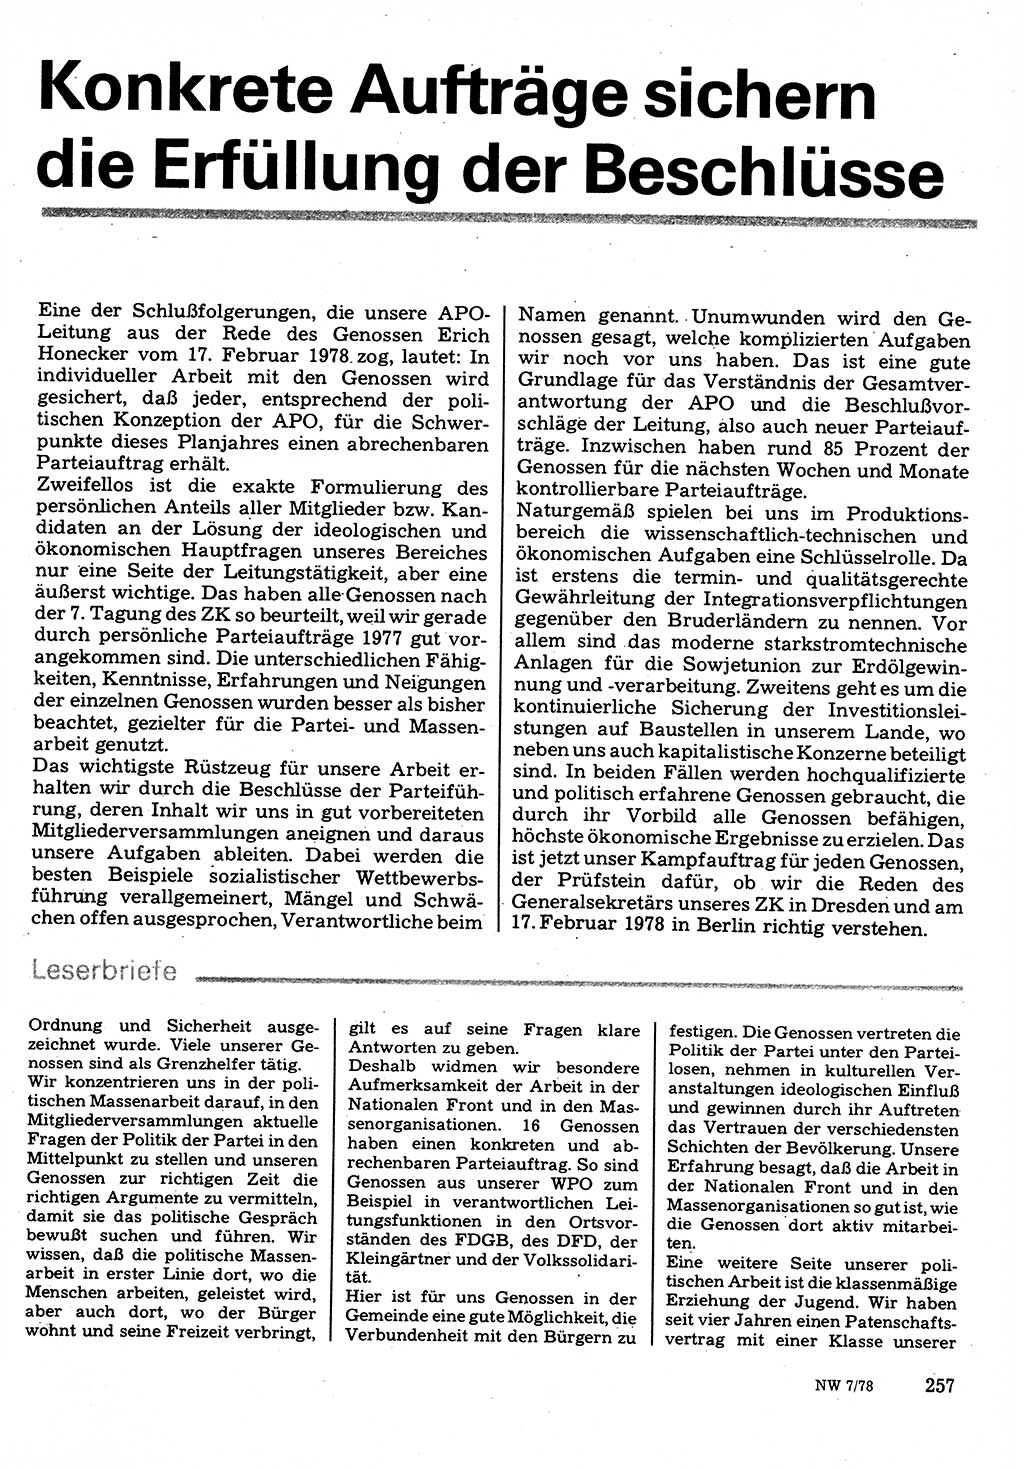 Neuer Weg (NW), Organ des Zentralkomitees (ZK) der SED (Sozialistische Einheitspartei Deutschlands) für Fragen des Parteilebens, 33. Jahrgang [Deutsche Demokratische Republik (DDR)] 1978, Seite 257 (NW ZK SED DDR 1978, S. 257)